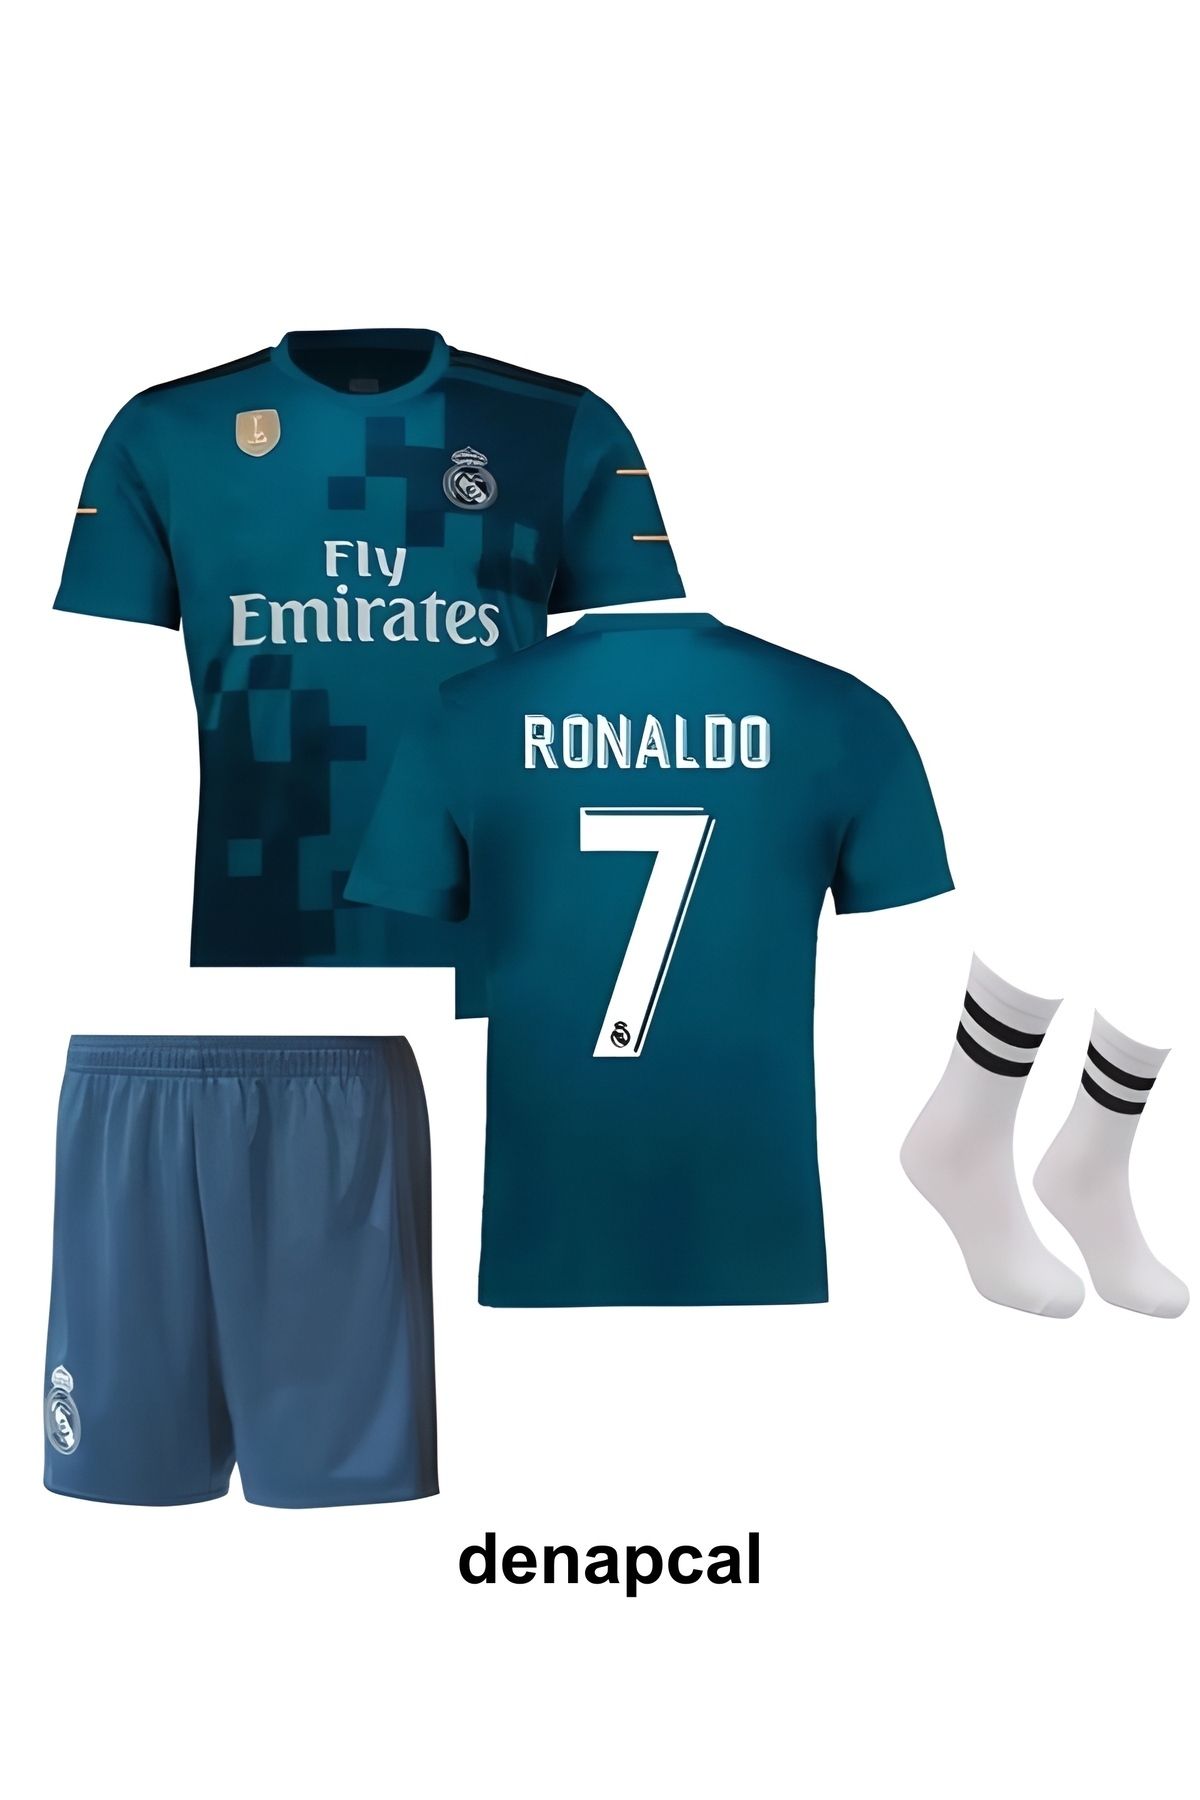 DENAPCAL Ronaldo Turkuaz-mavi Real Madrid 2018 Deplasman 3'lü Çoçuk Futbol Forma Seti ( Forma,şort Ve Çorap )